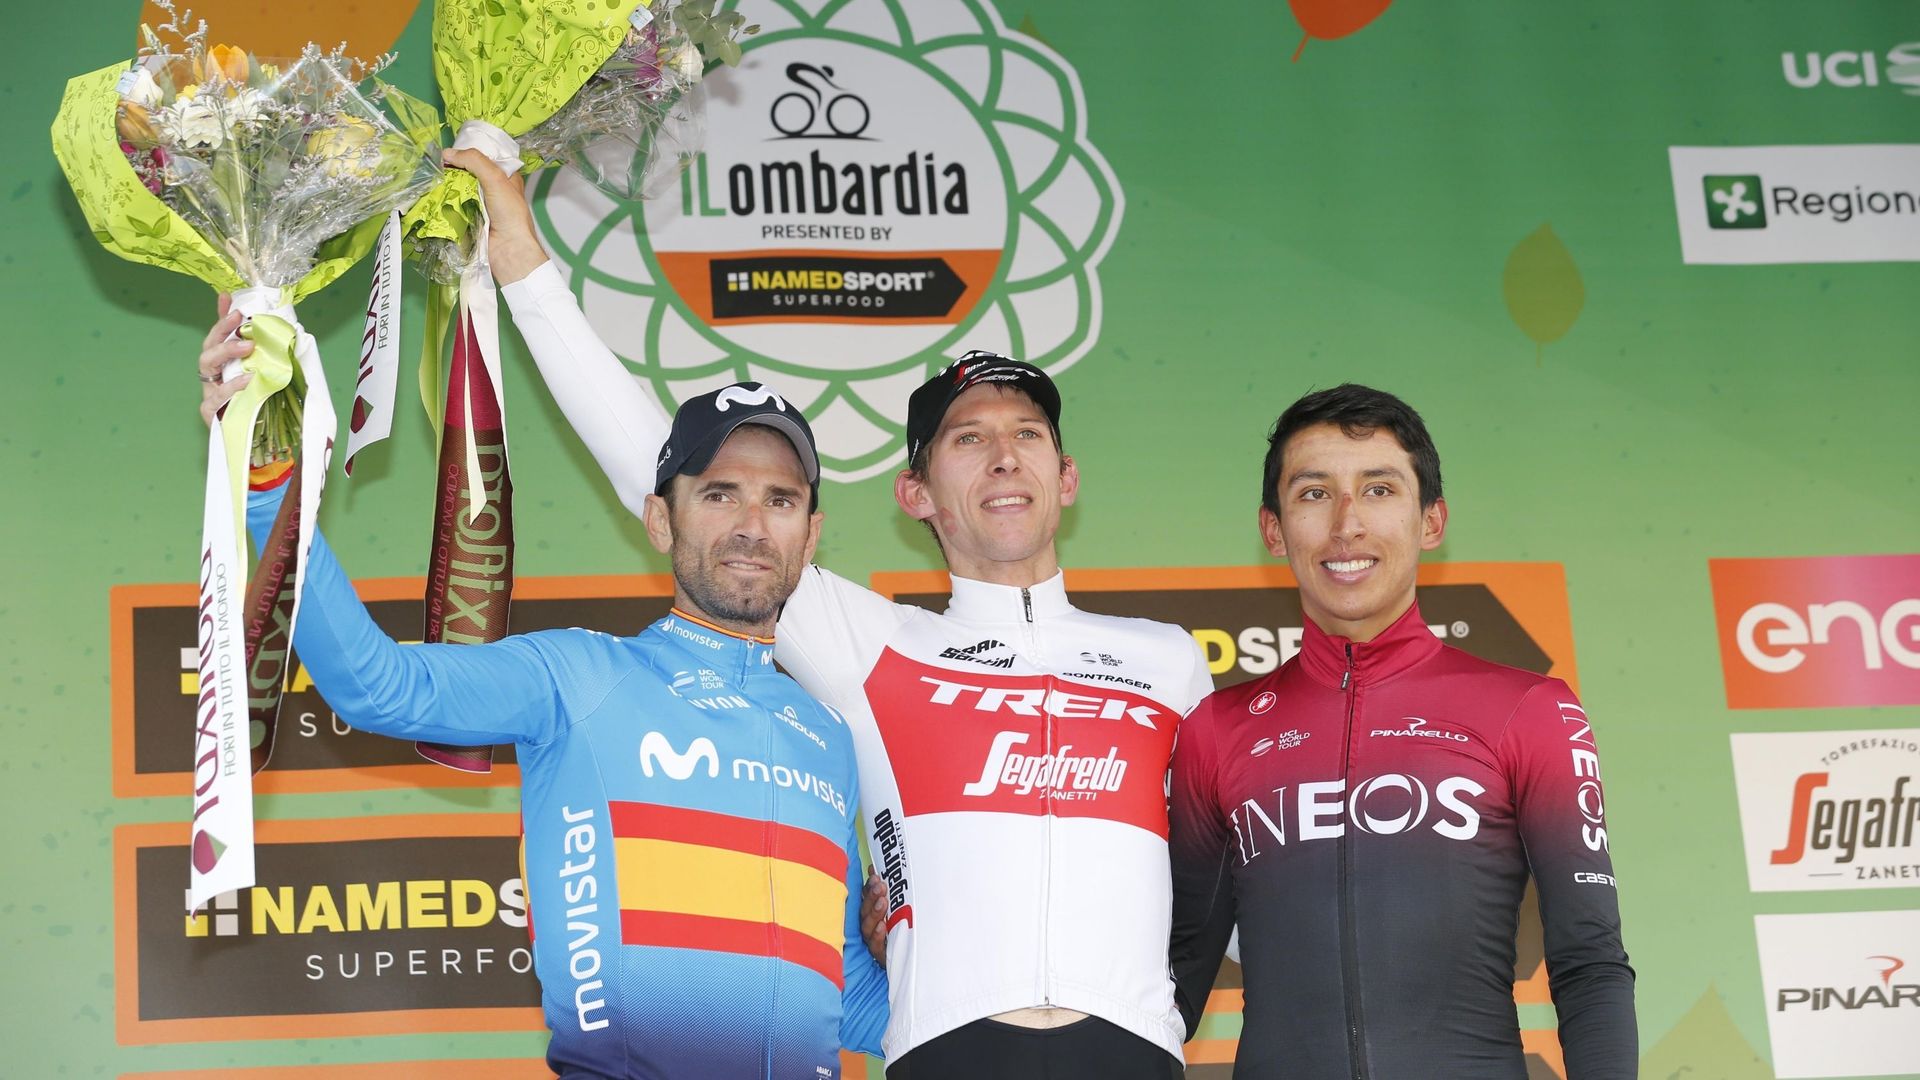 Le podium de l'édition 2019 du Tour de Lombardie 